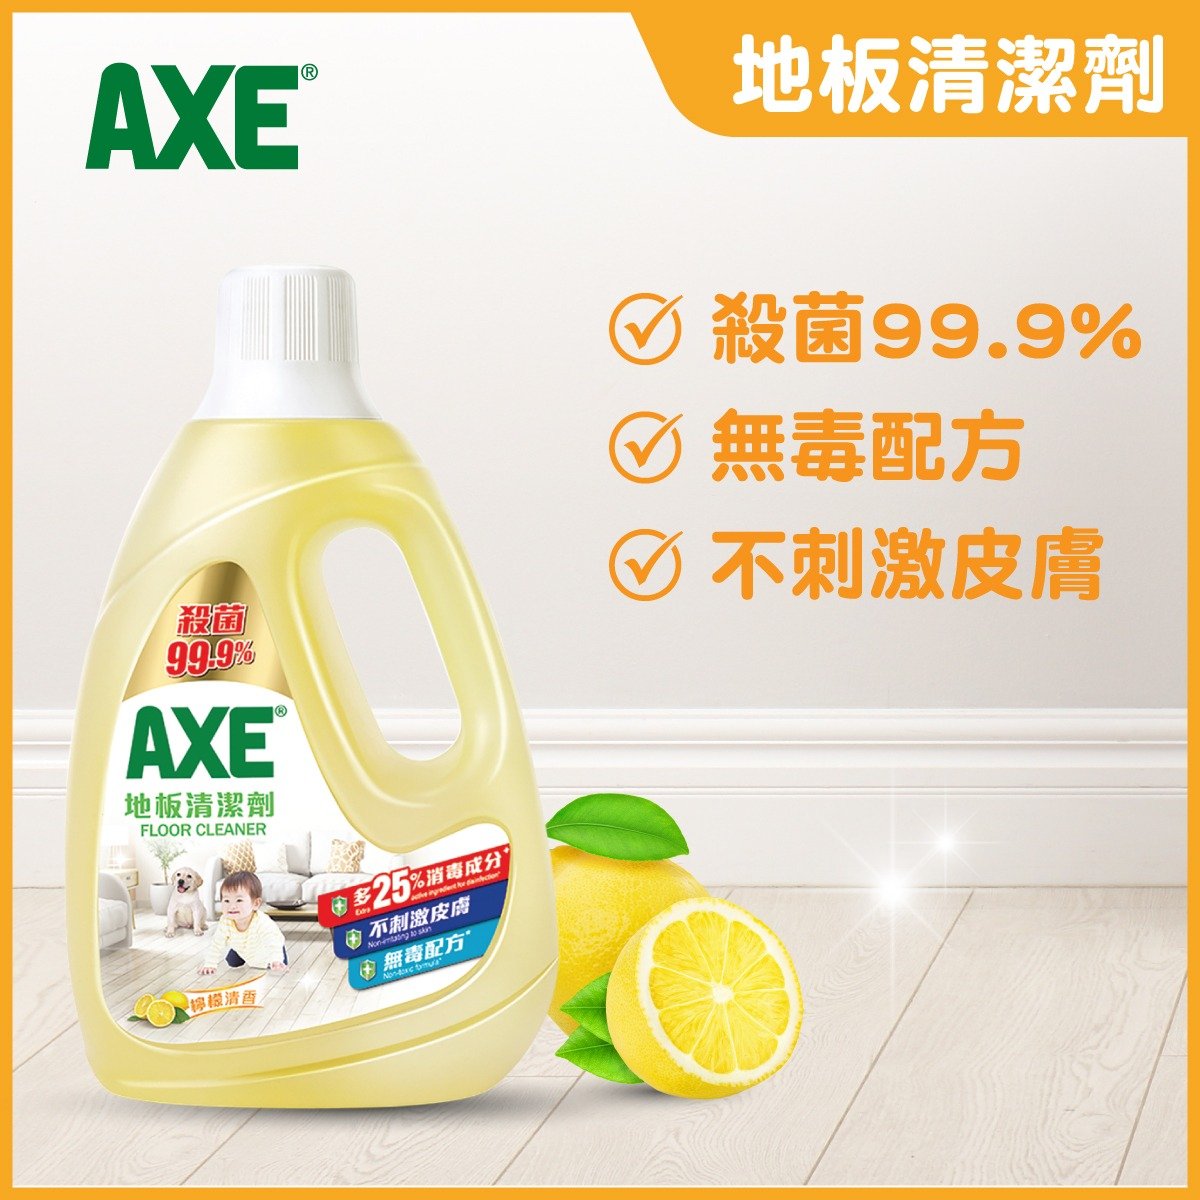 高效二合一地板清潔劑 - 檸檬香味 (新舊包裝隨機發送)